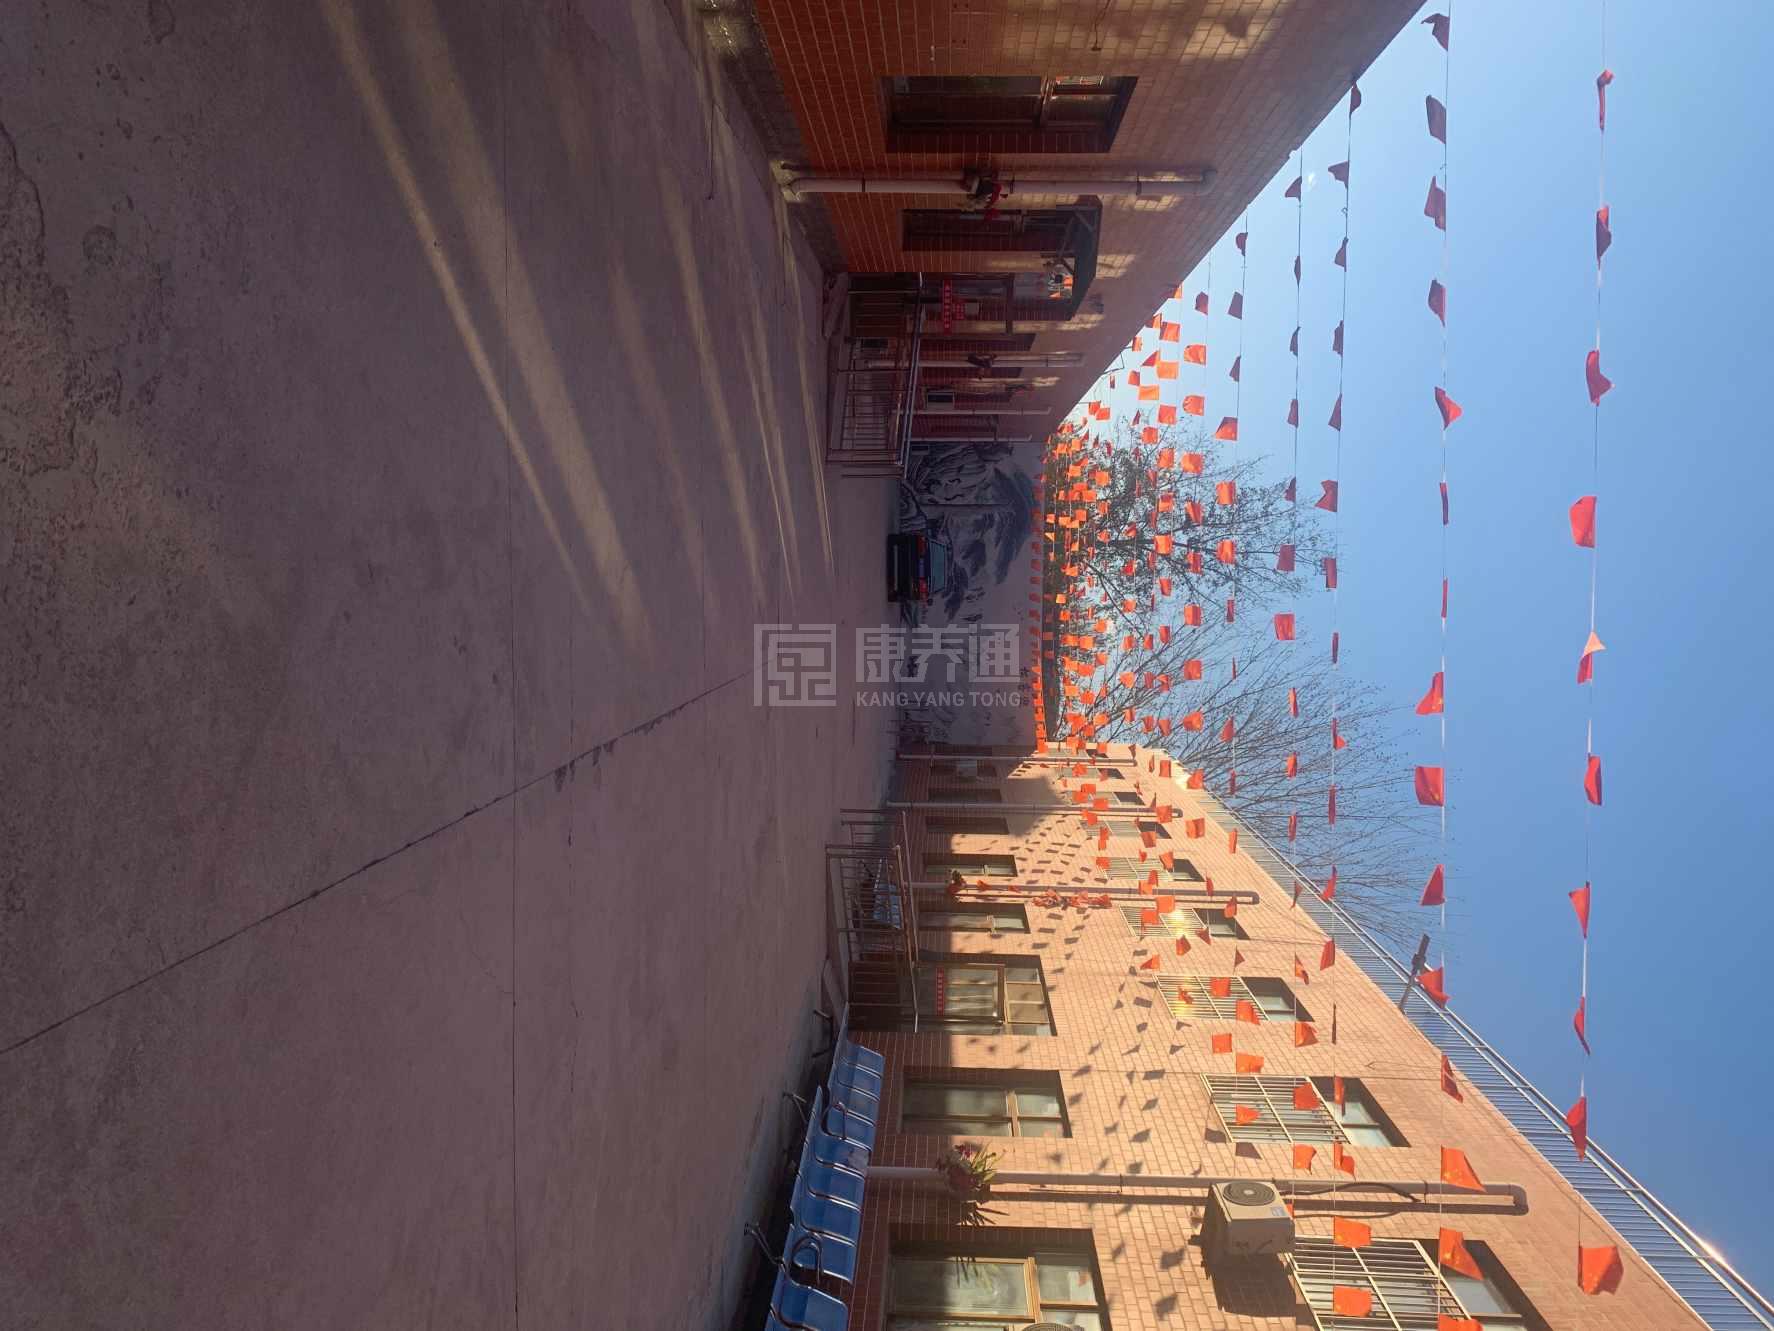 天津市蓟州区阖福源老年公寓服务项目图3惬意的环境、感受岁月静好